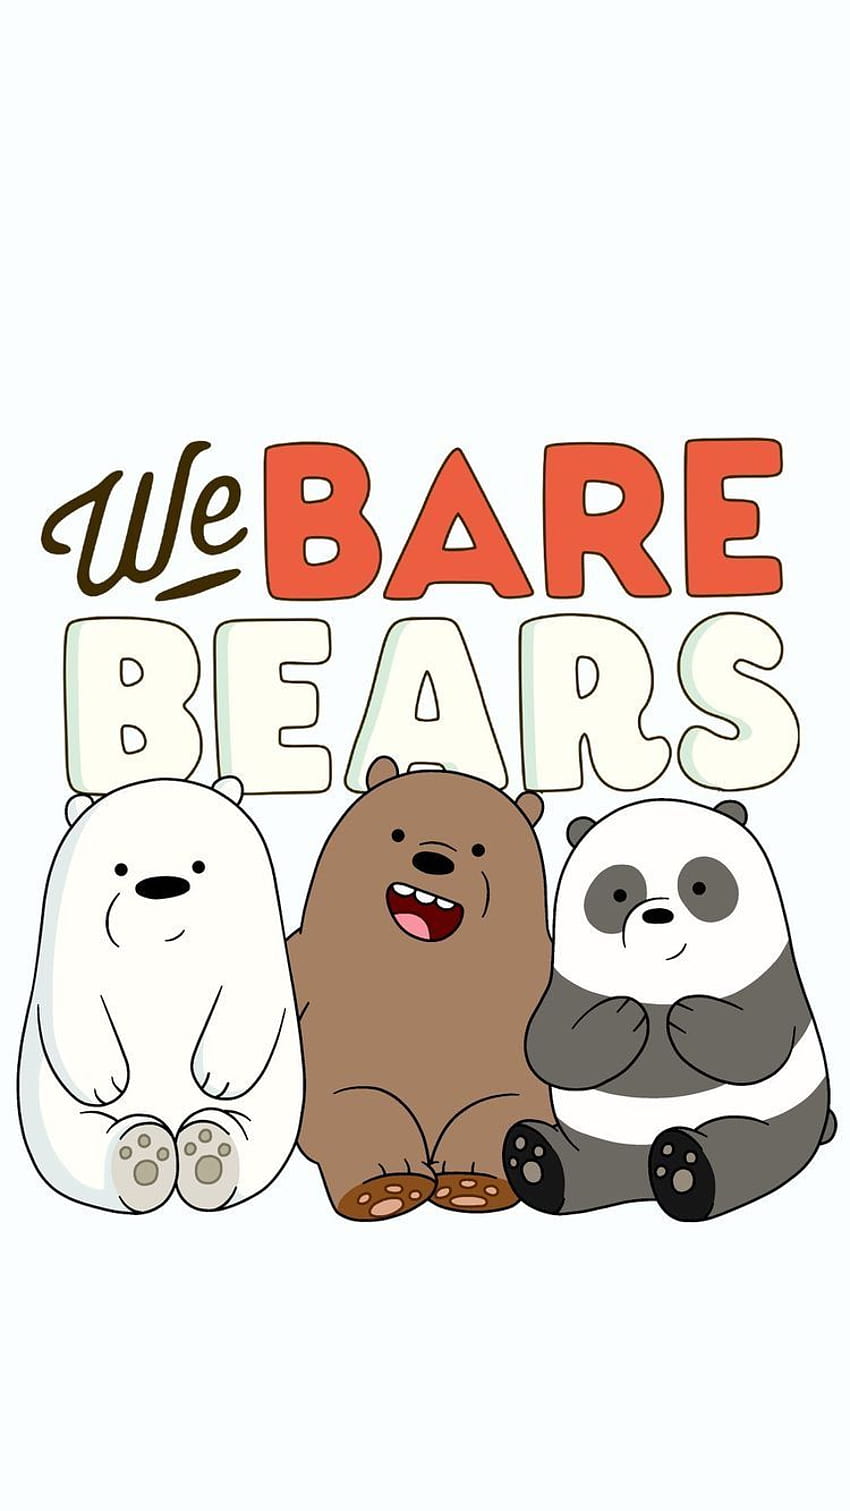 Cute 3 Bears Cartoon HD phone wallpaper | Pxfuel